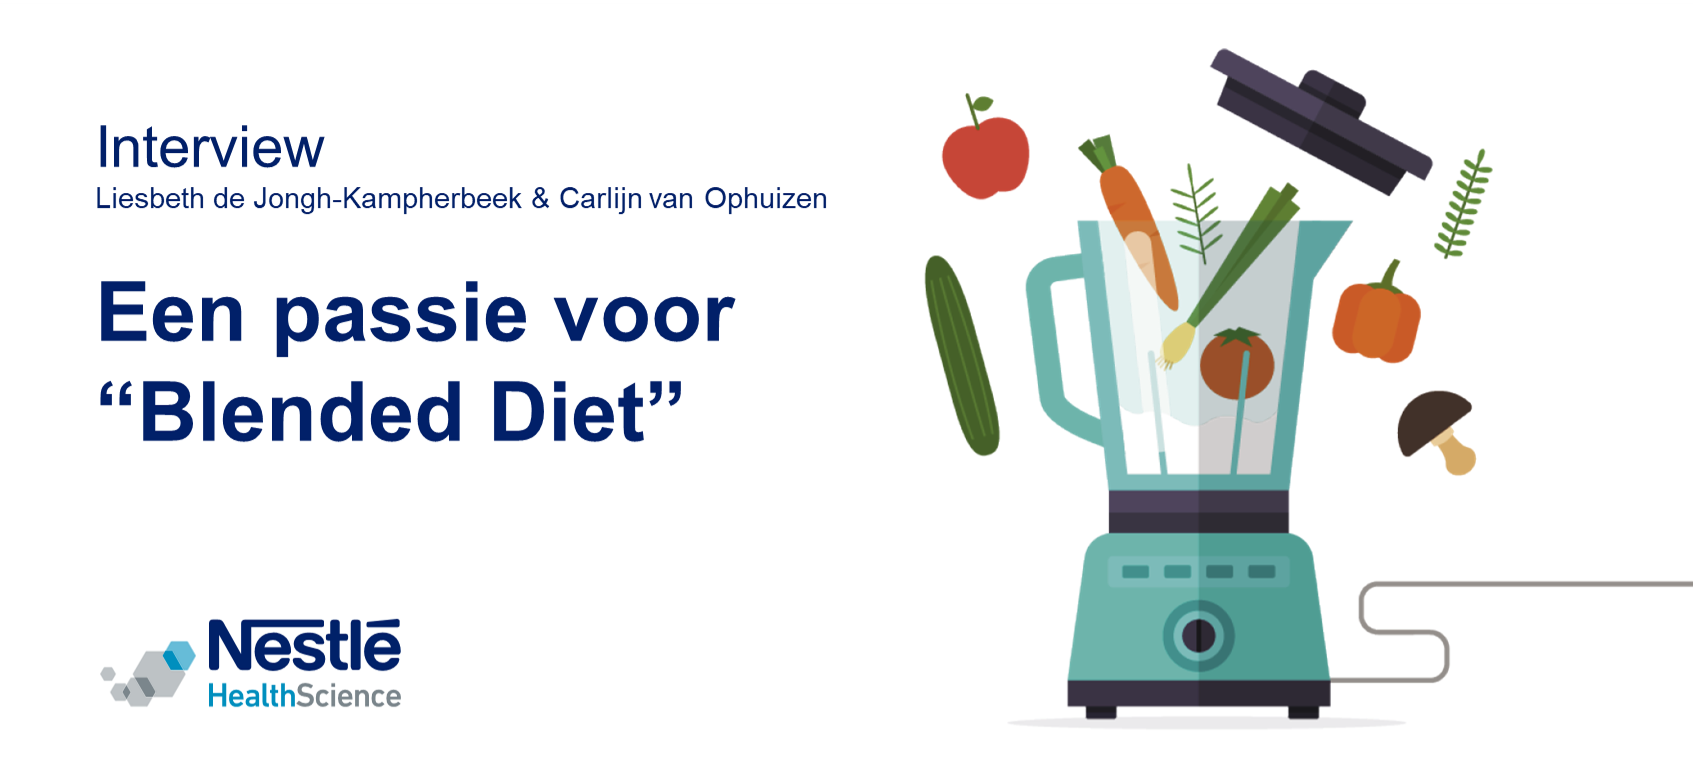 Interview Blended Diet - Liesbeth de Jongh & Carlijn van Ophuizen